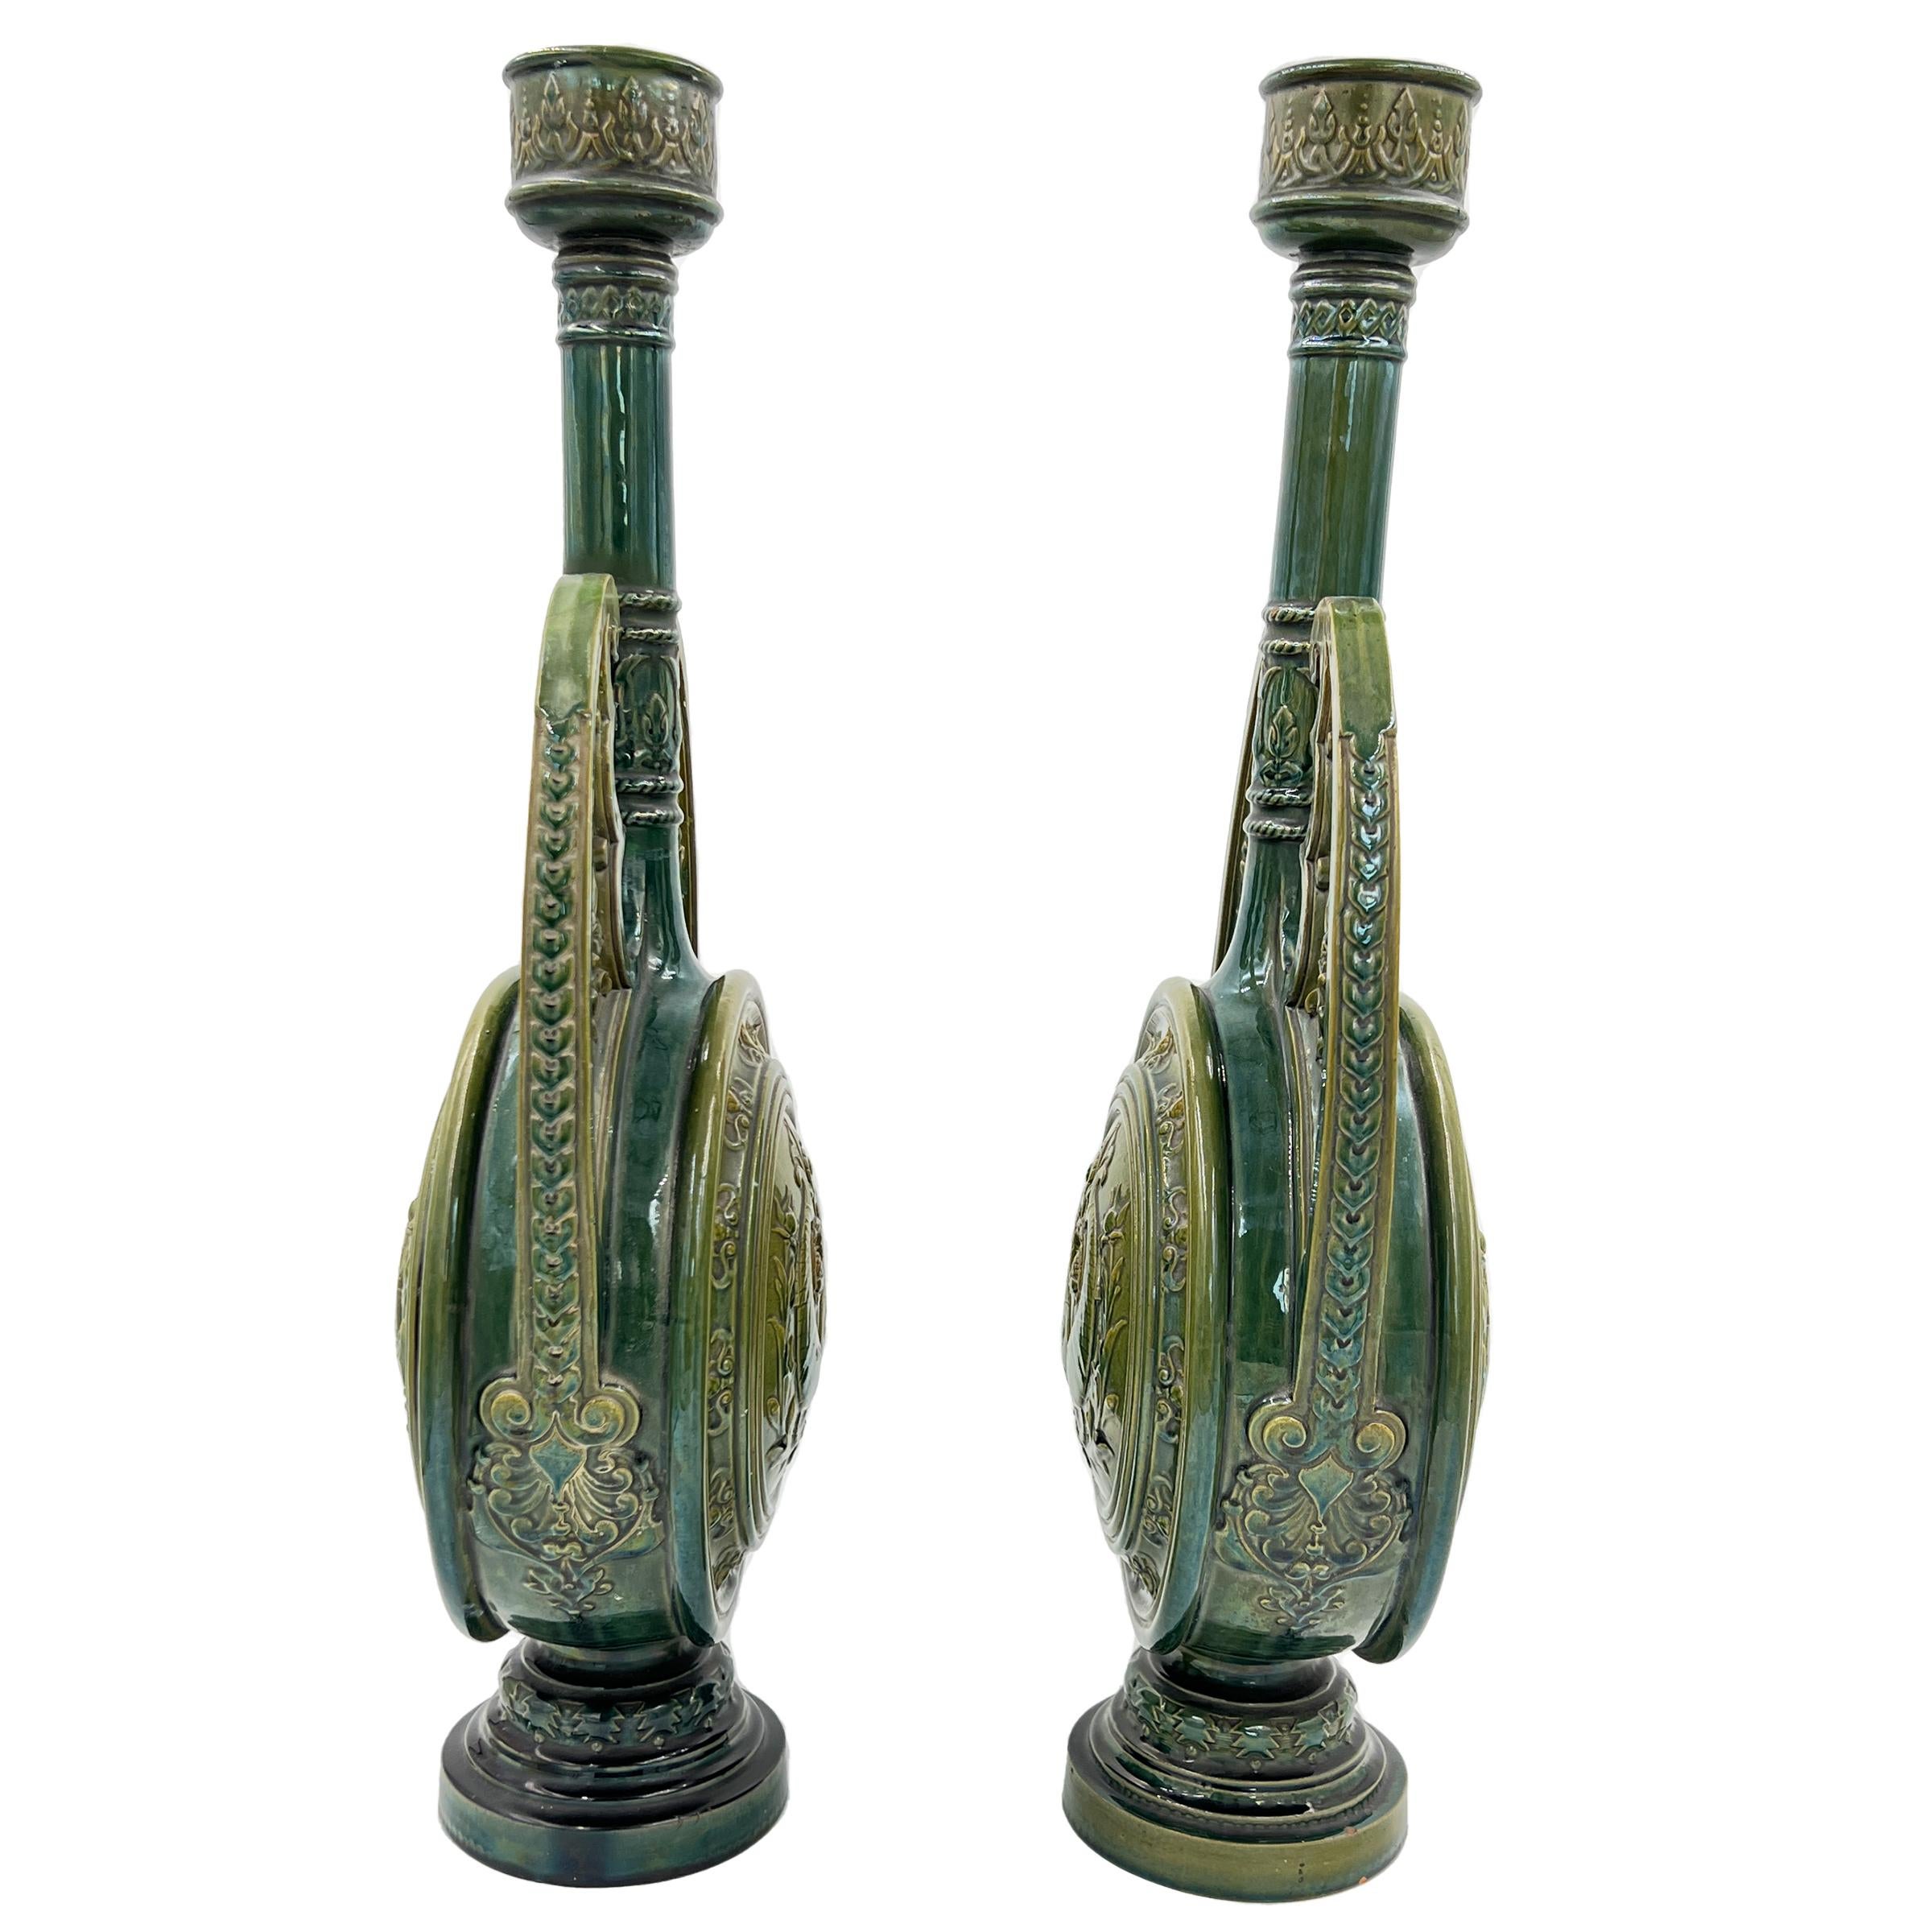 Ein schönes Paar grün glasierter Kerzenhalter aus dem 19. Jahrhundert mit Fischmotiven auf dem runden Körper.